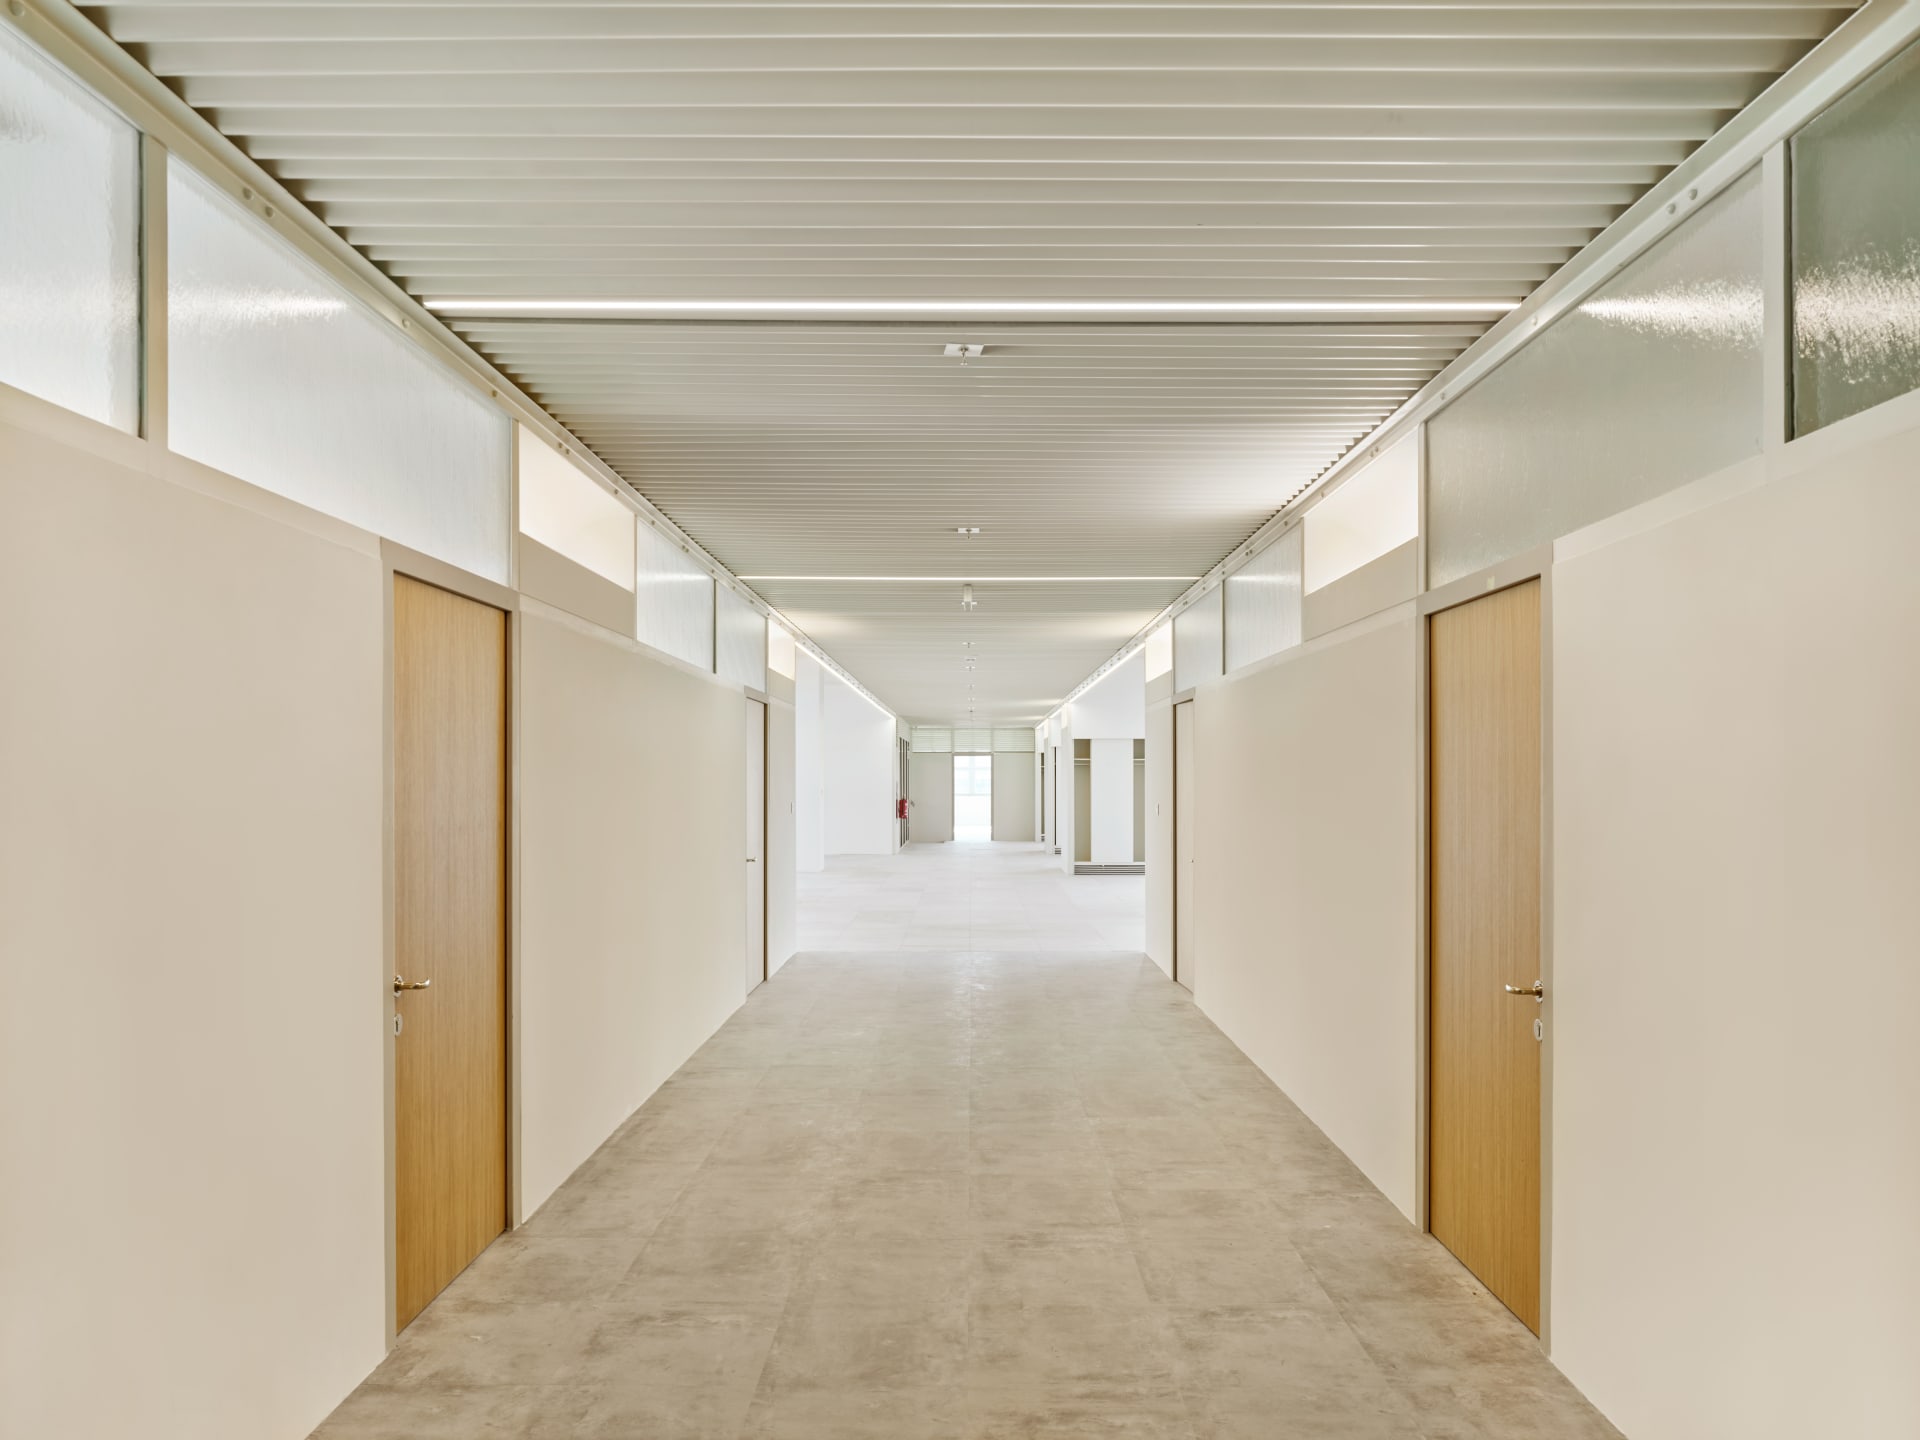 Na podzim 2018 začala rozsáhlá rekonstrukce této budovy na základě projektu kanceláře TaK Architects v čele s architektem Markem Tichým. Investorem byla společnost CPI Group, generálním dodavatelem Metrostav a.s.